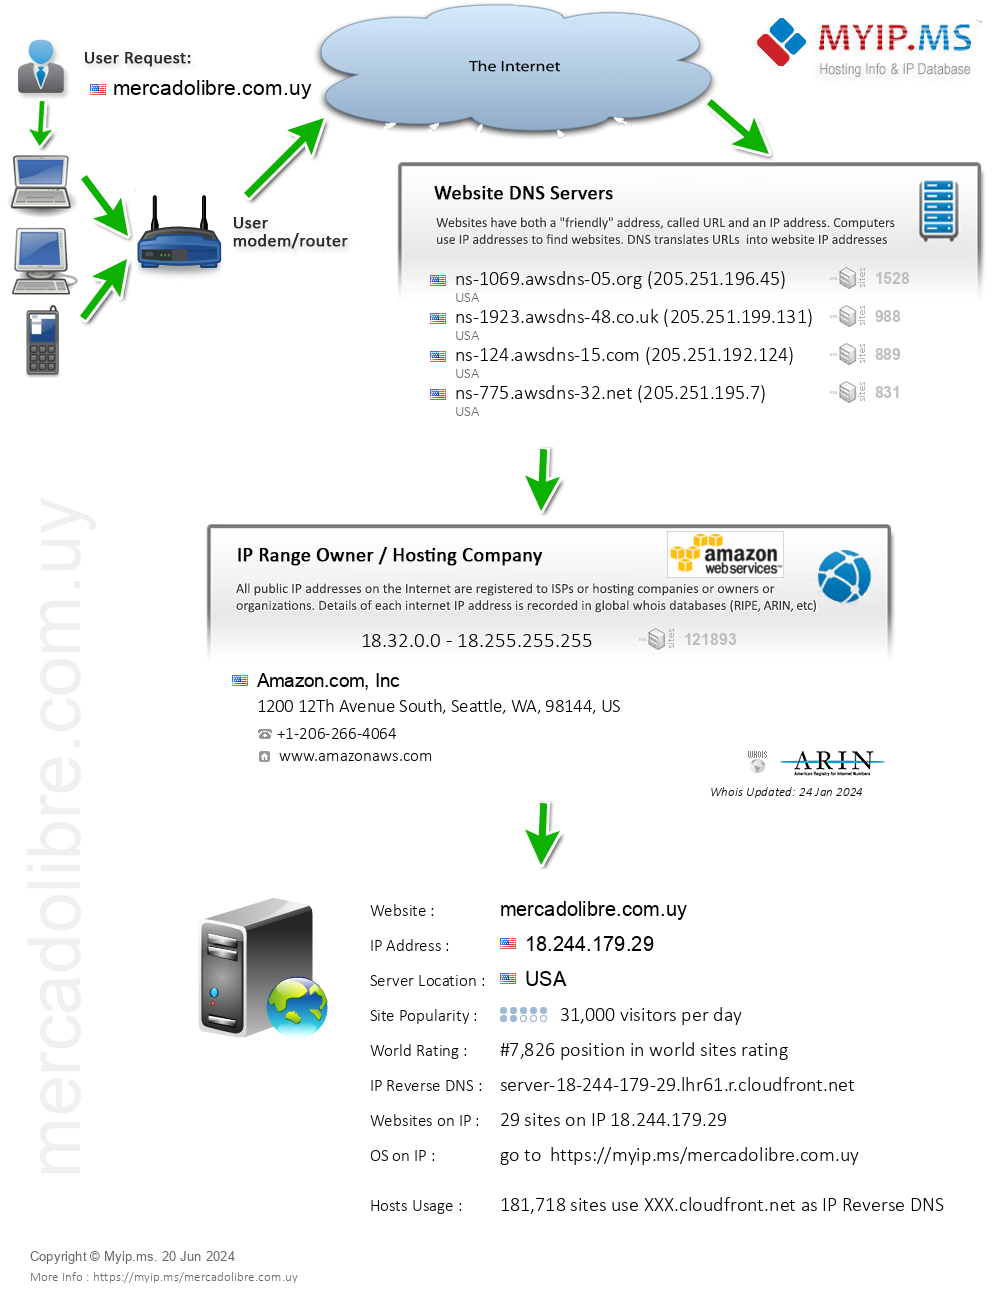 Mercadolibre.com.uy - Website Hosting Visual IP Diagram